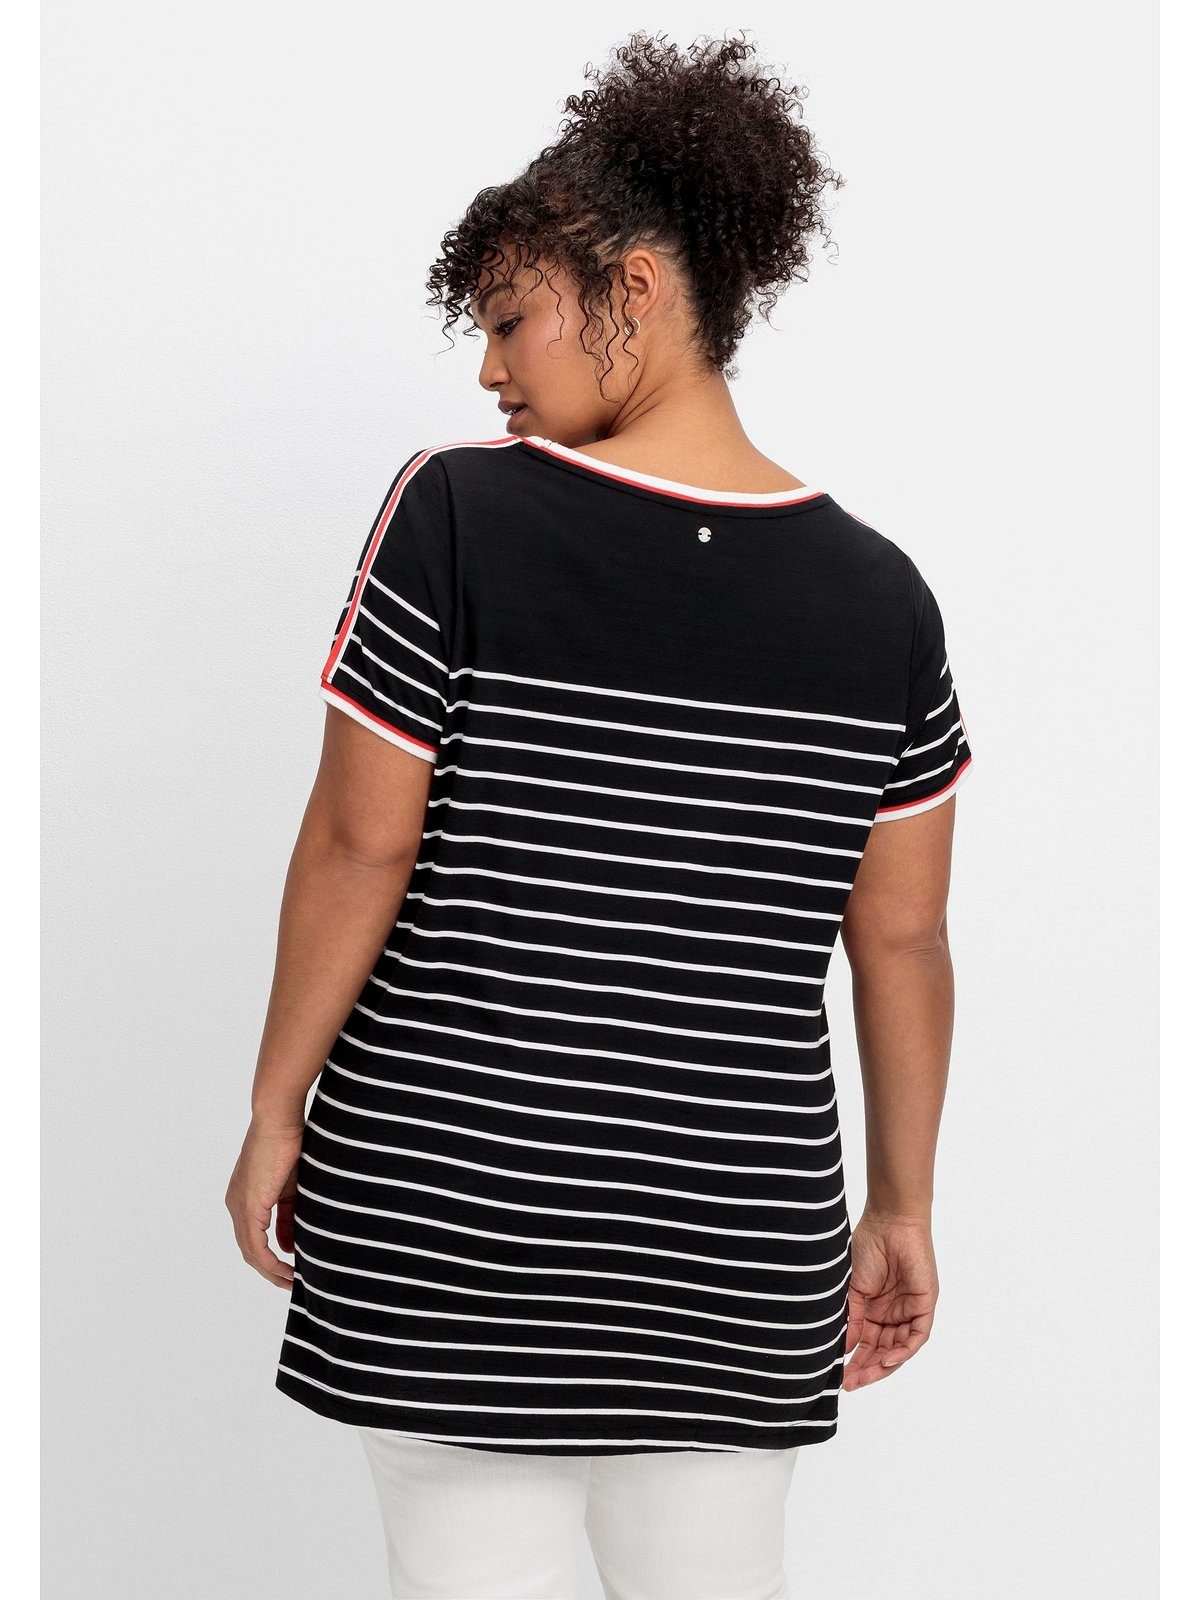 Sheego T-Shirt Schulter auf Größen schwarz Große gemustert Zierband der mit